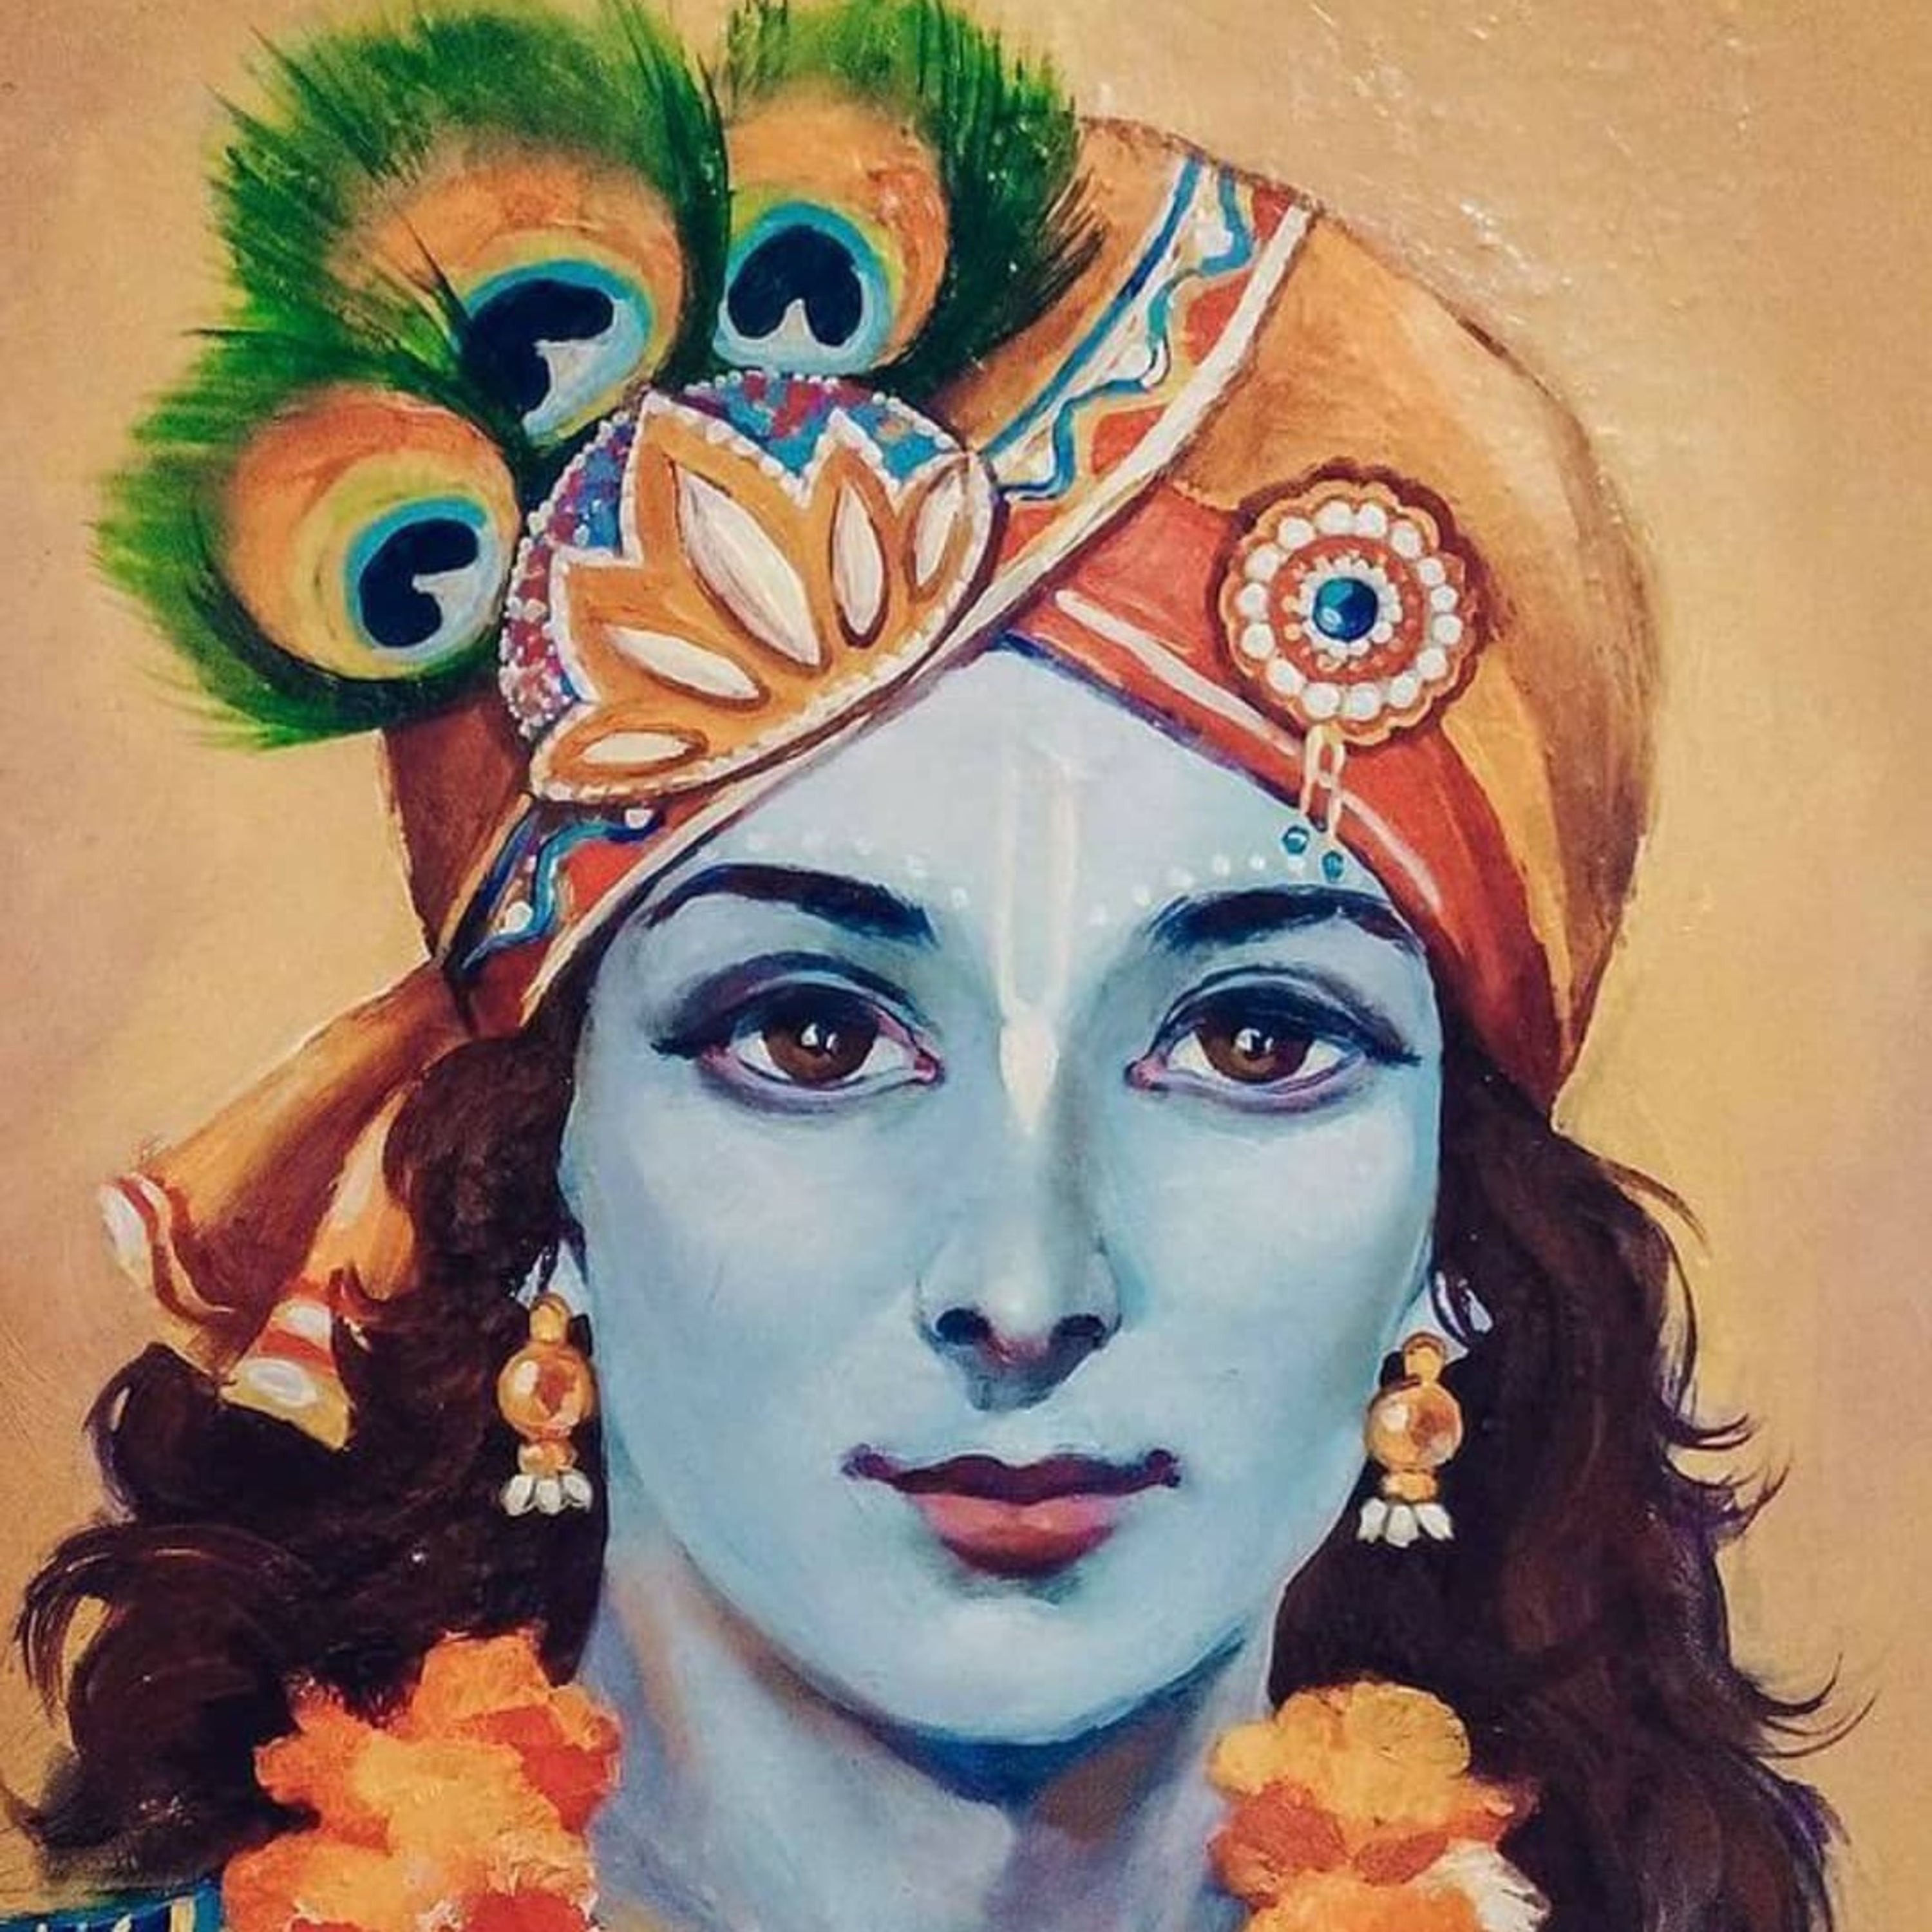 Mahnet karne par bhi safalta kyu nahi miti.. Shri Krishna Amritvani...